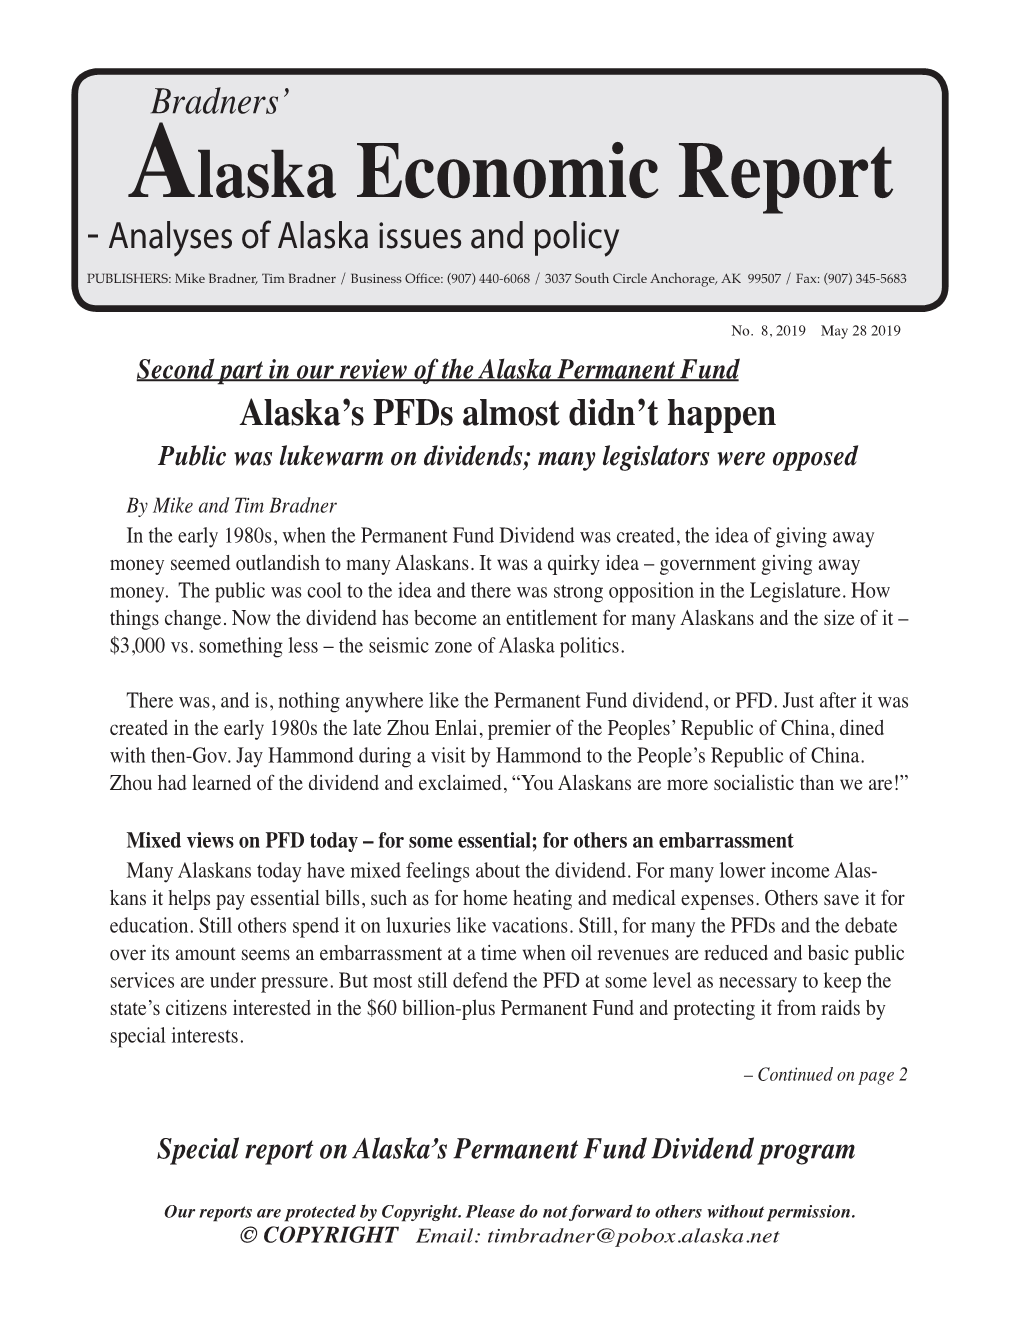 Alaska Economic Report No